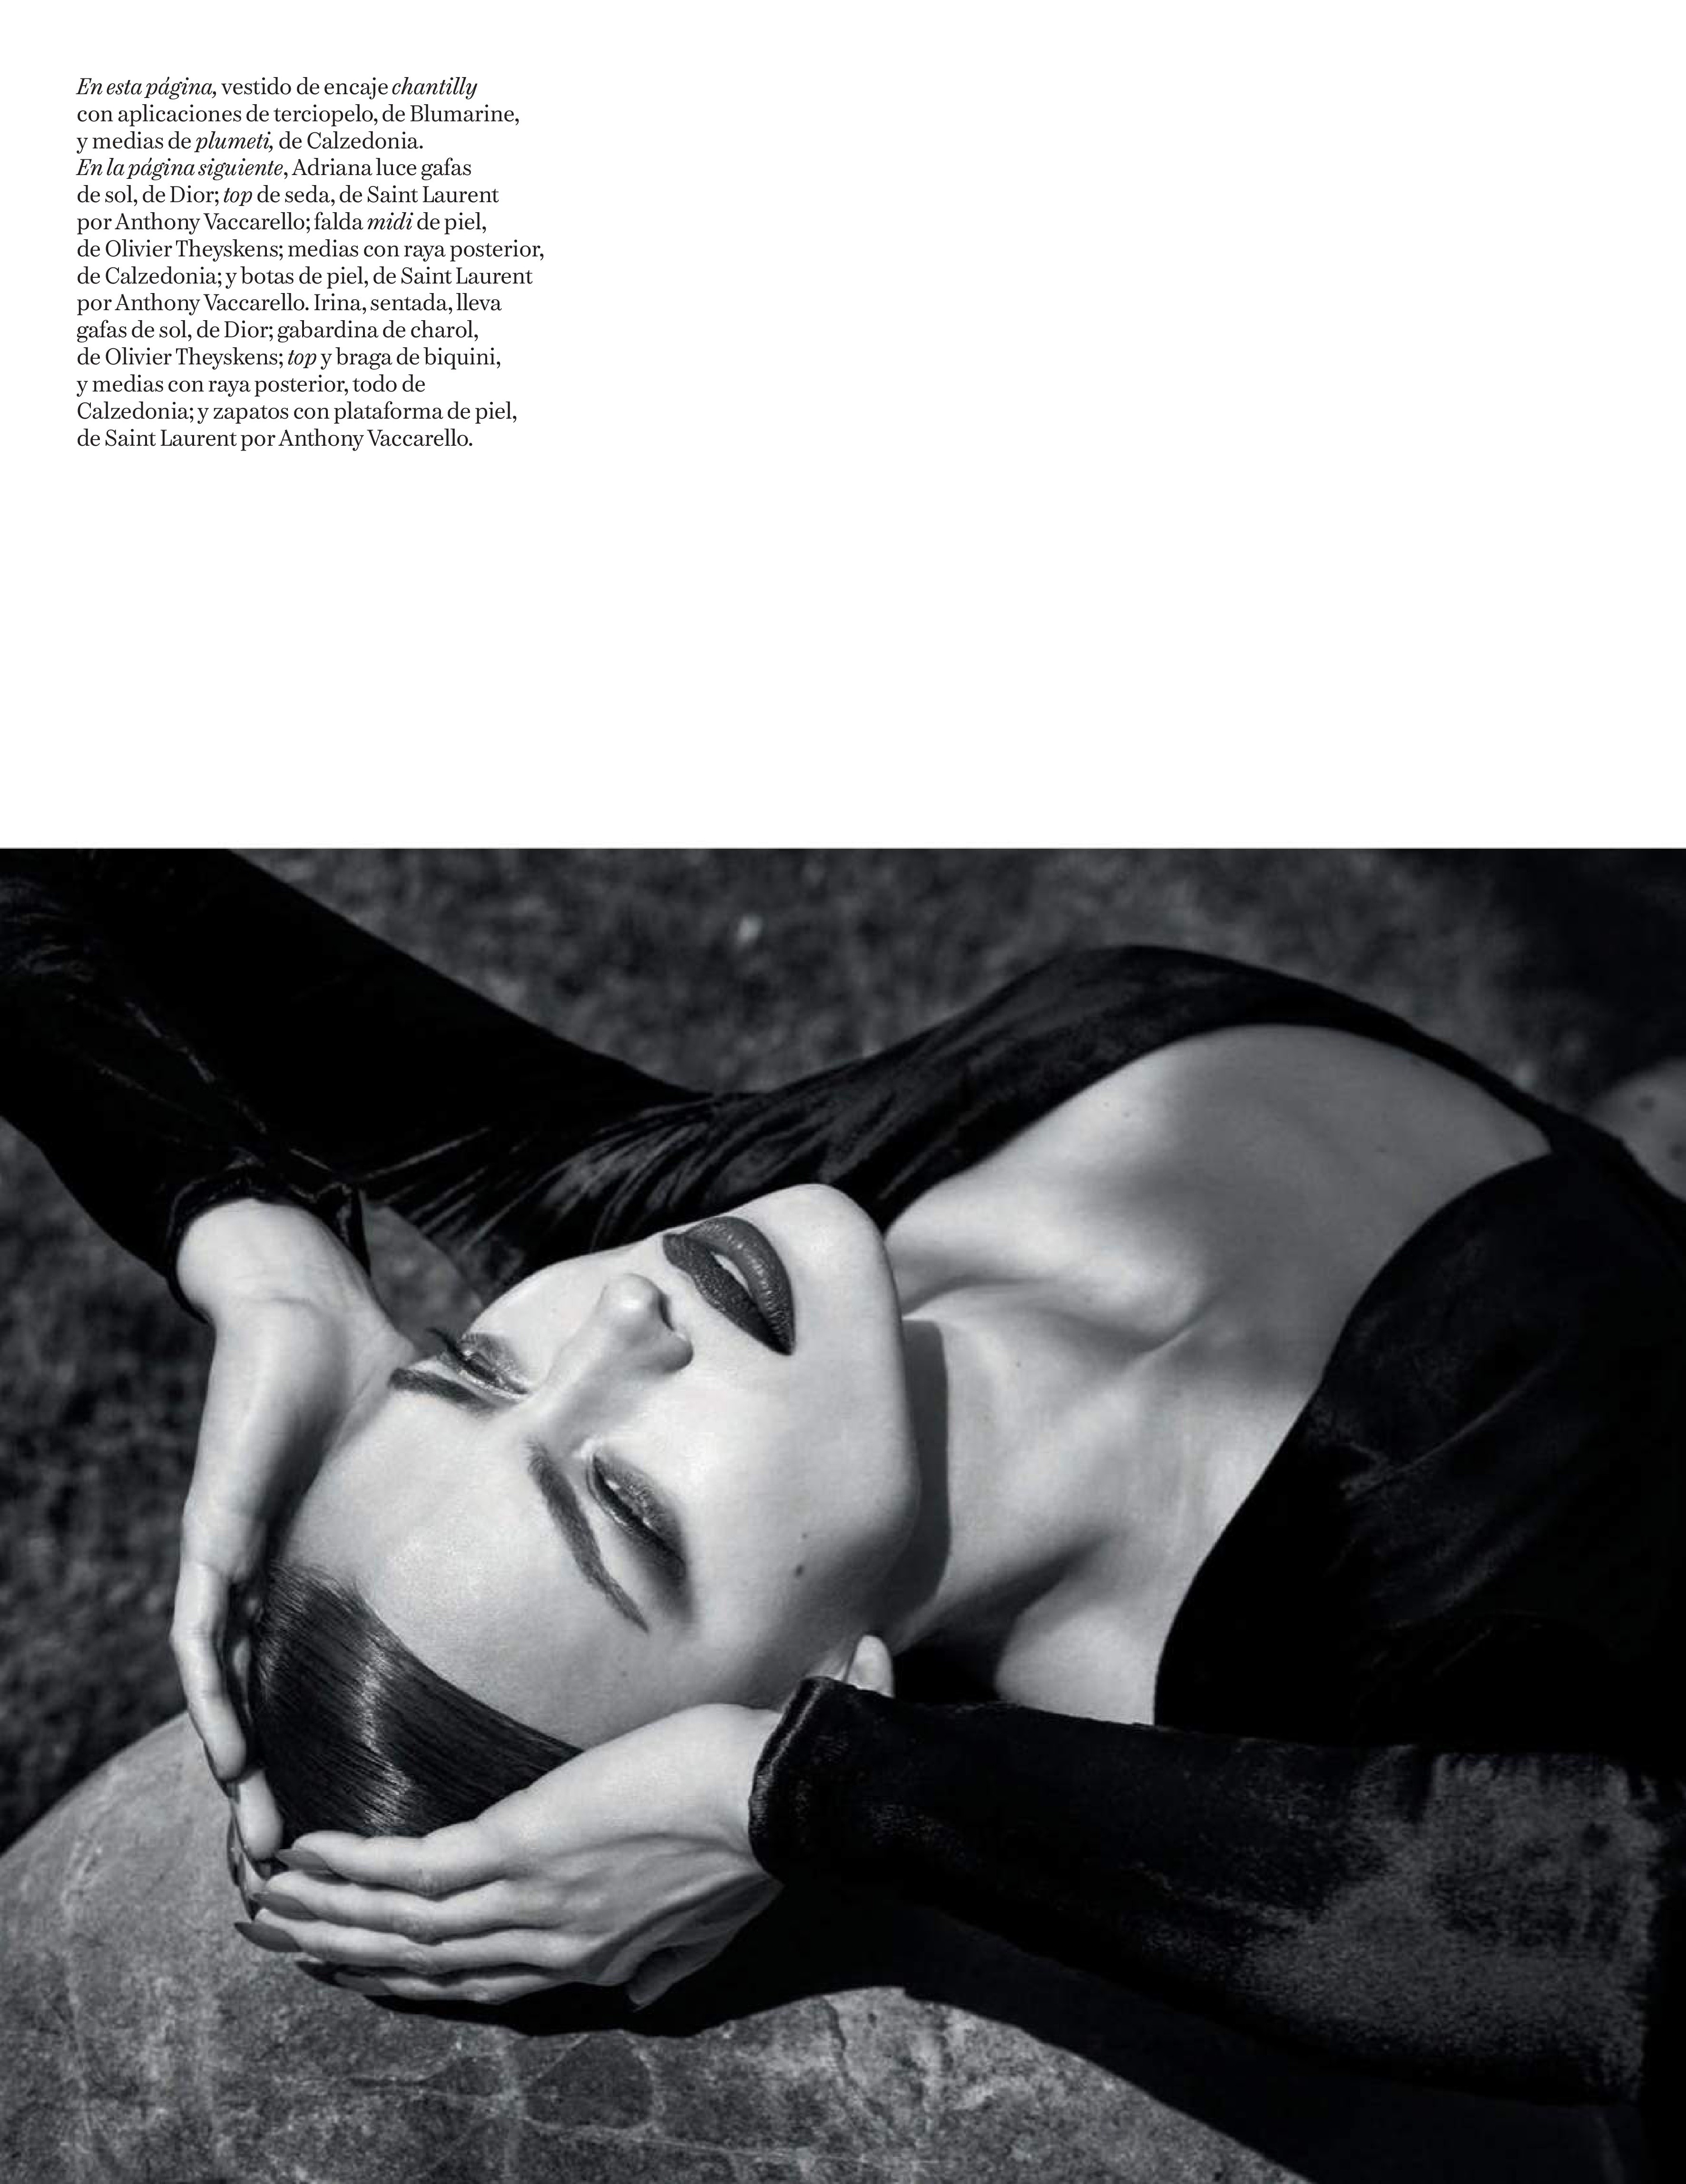 Adriana Lima Irina Shayk TheFappening.Pro 7 - Adriana Lima & Irina Shayk for Vogue Spain (22 Photos)